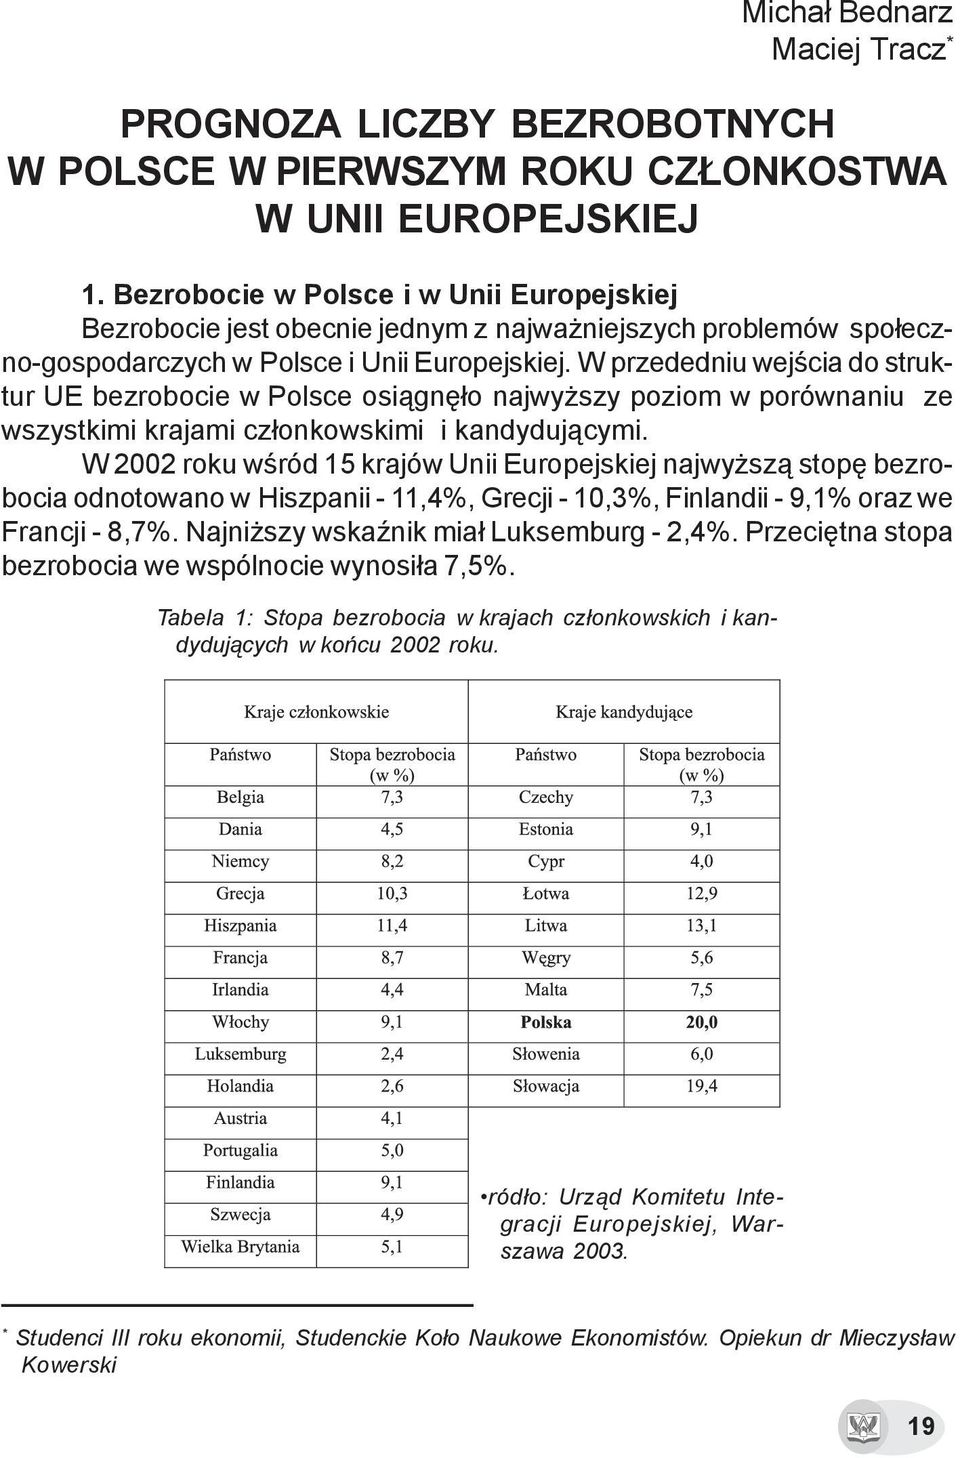 W przededniu wejœcia do struktur UE bezrobocie w Polsce osi¹gnê³o najwy szy poziom w porównaniu ze wszystkimi krajami cz³onkowskimi i kandyduj¹cymi.